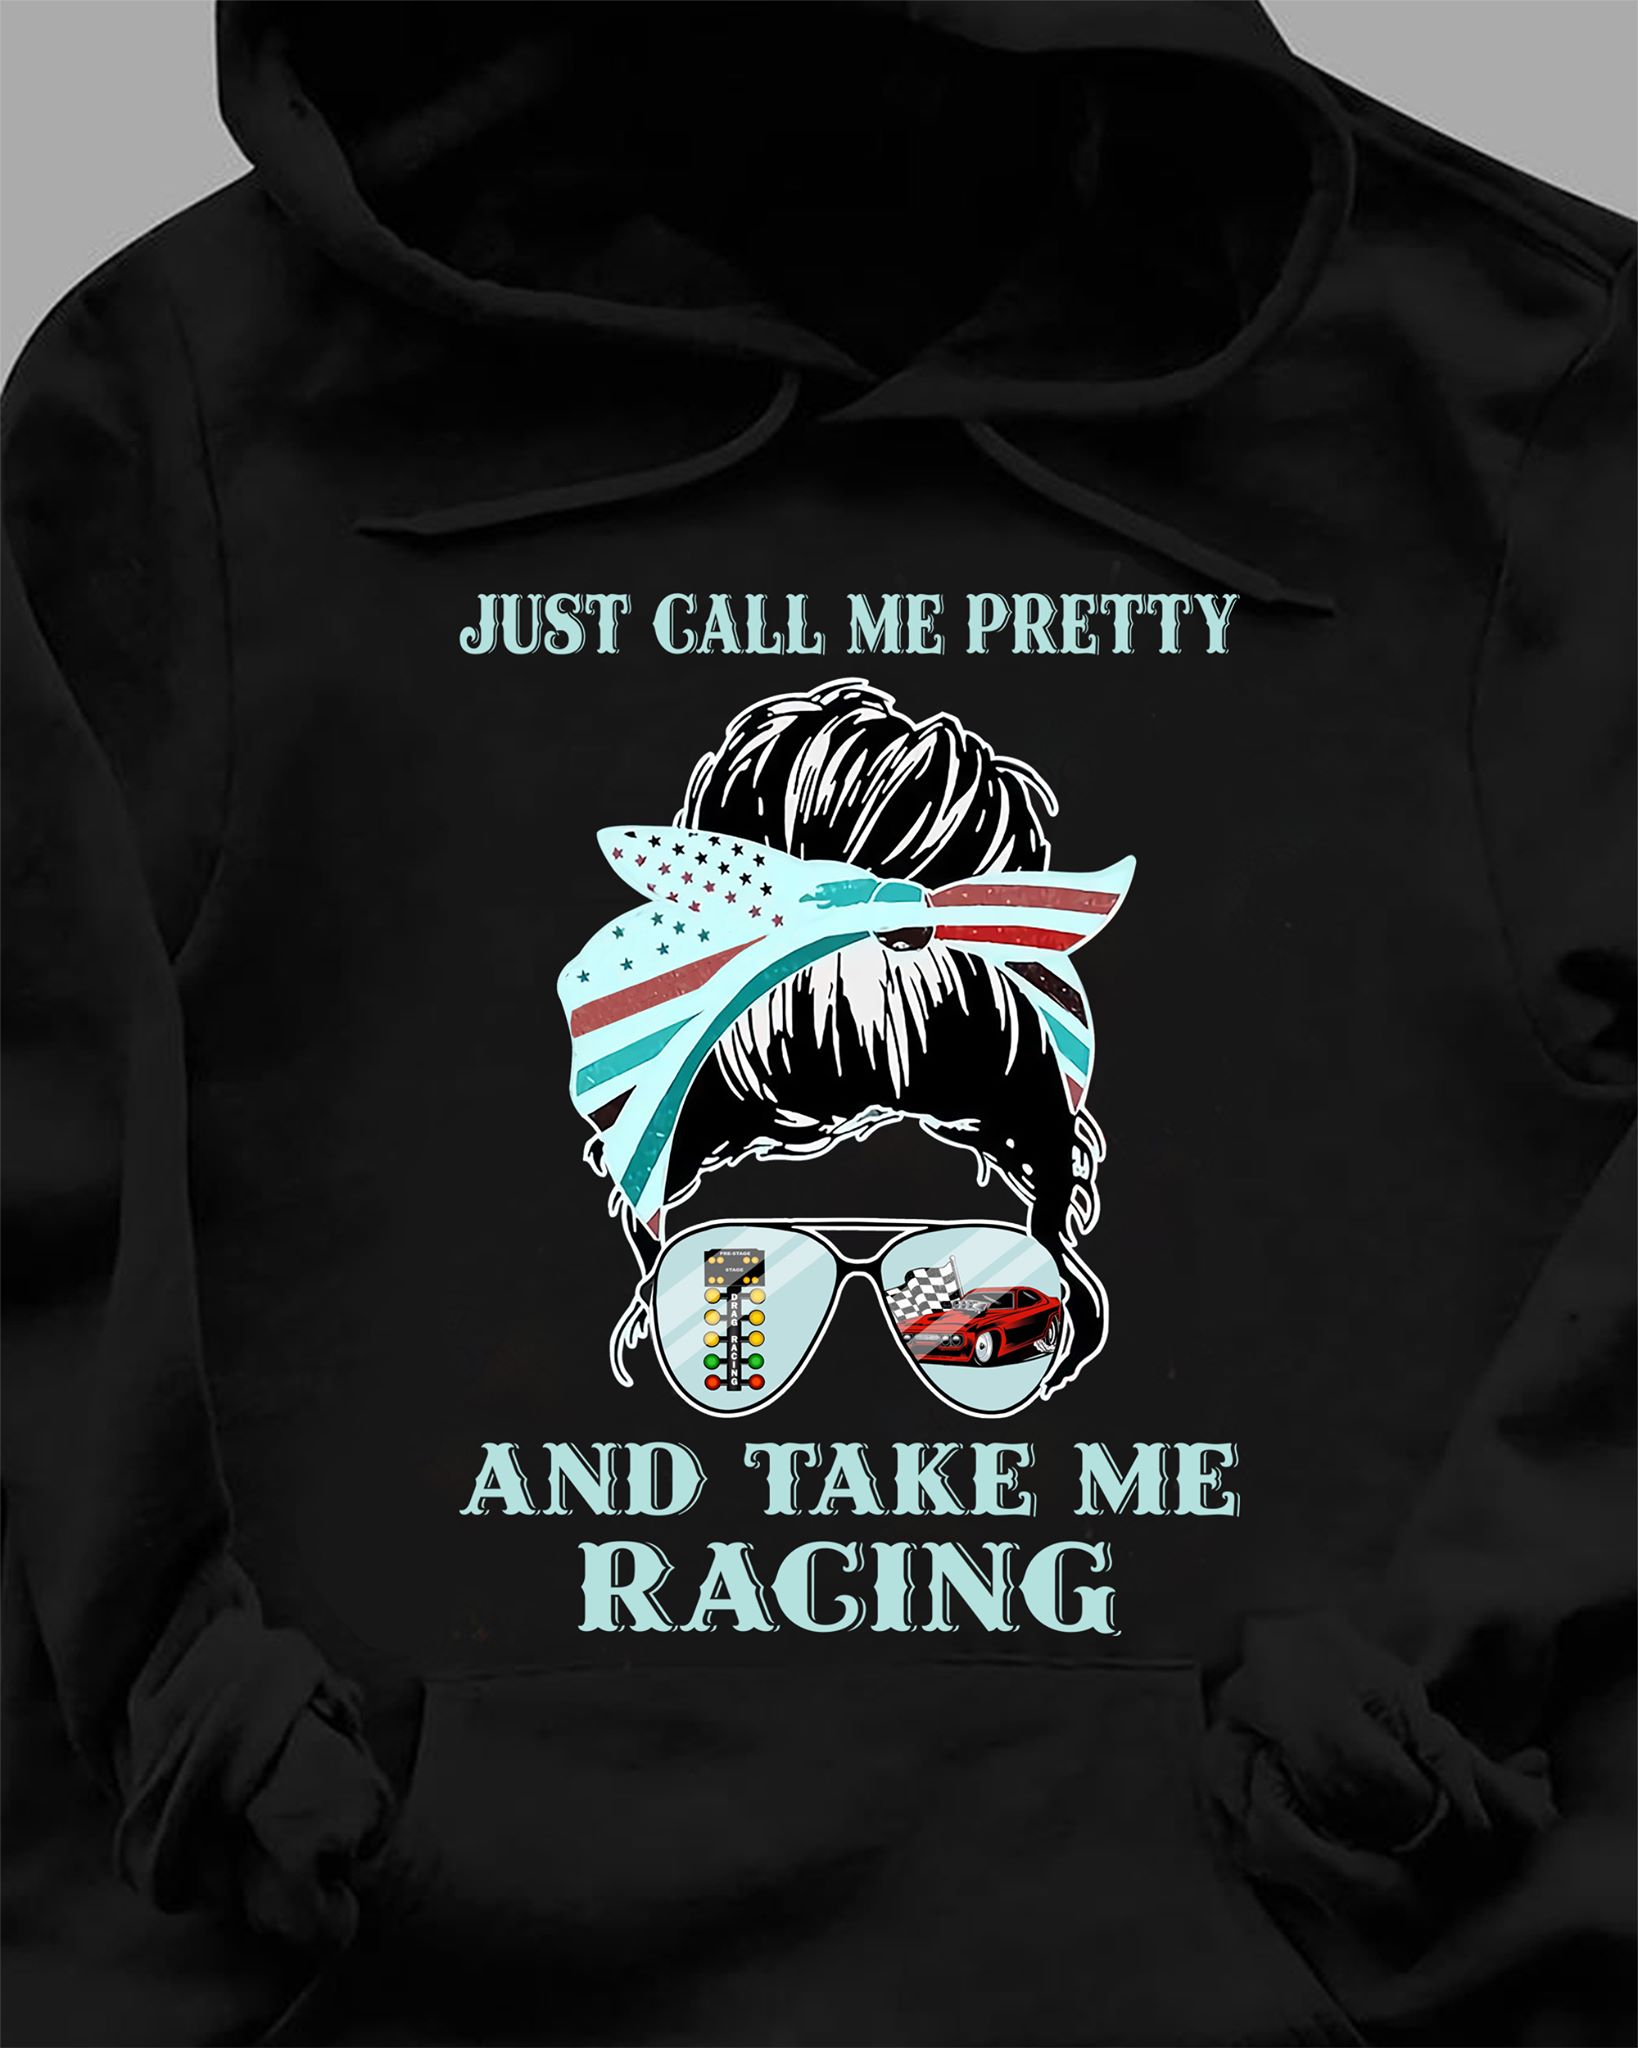 Just call me pretty and take me racing - Girl love racing, pretty girl racing